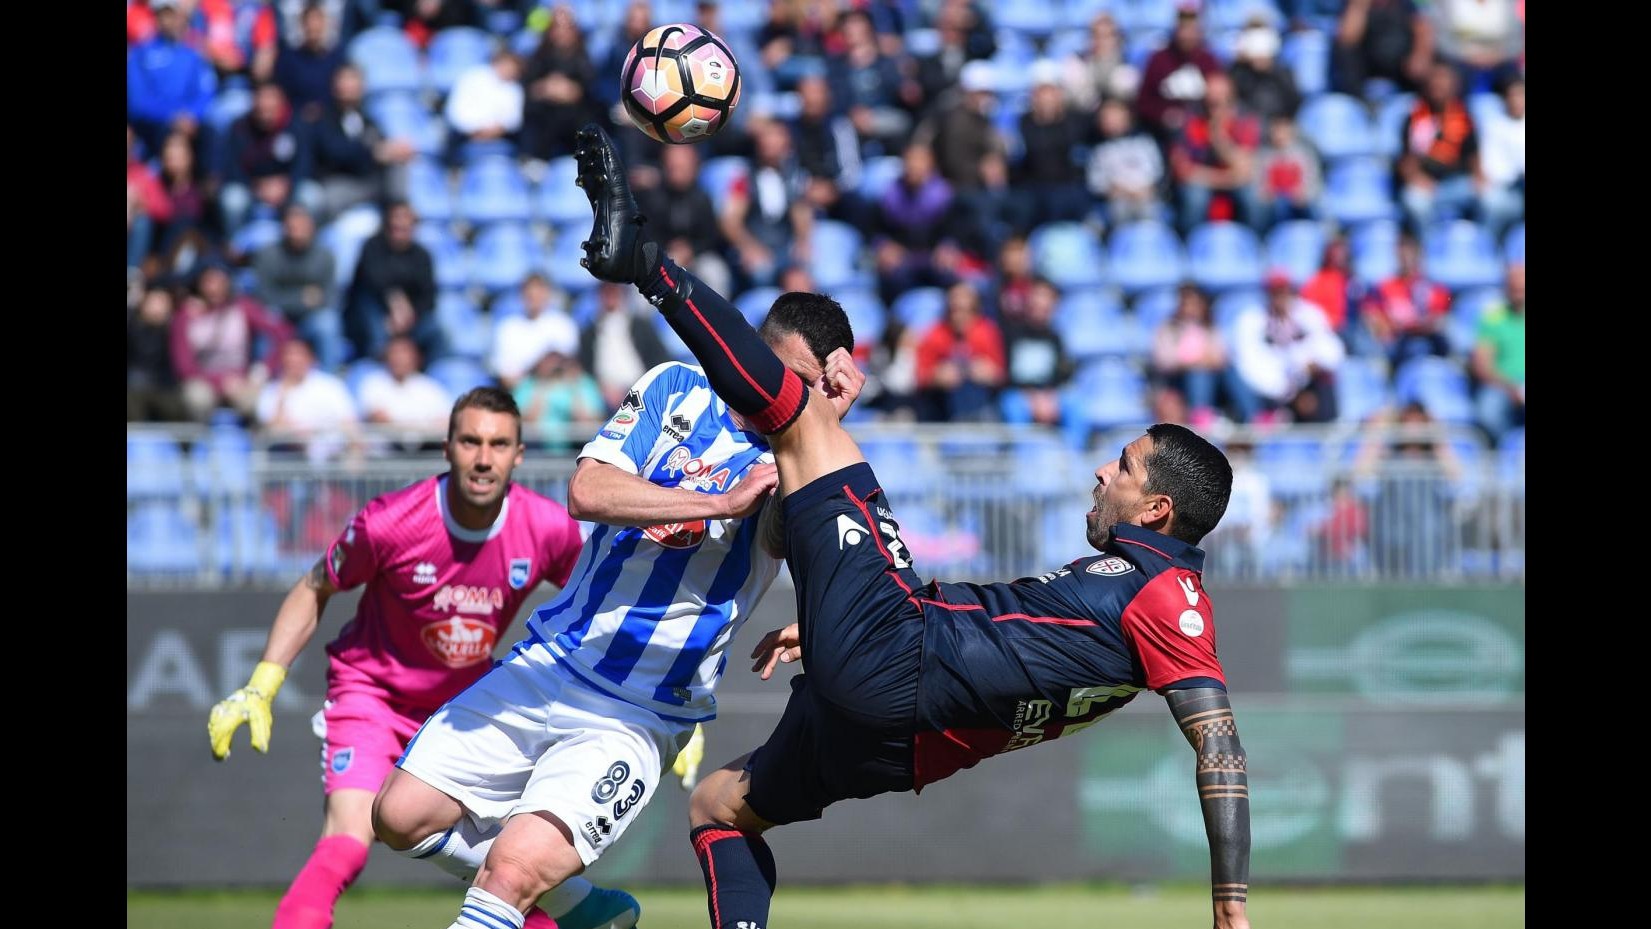 FOTO Serie A, Cagliari-Pescara 1-0: decide rigore di Joa Pedro